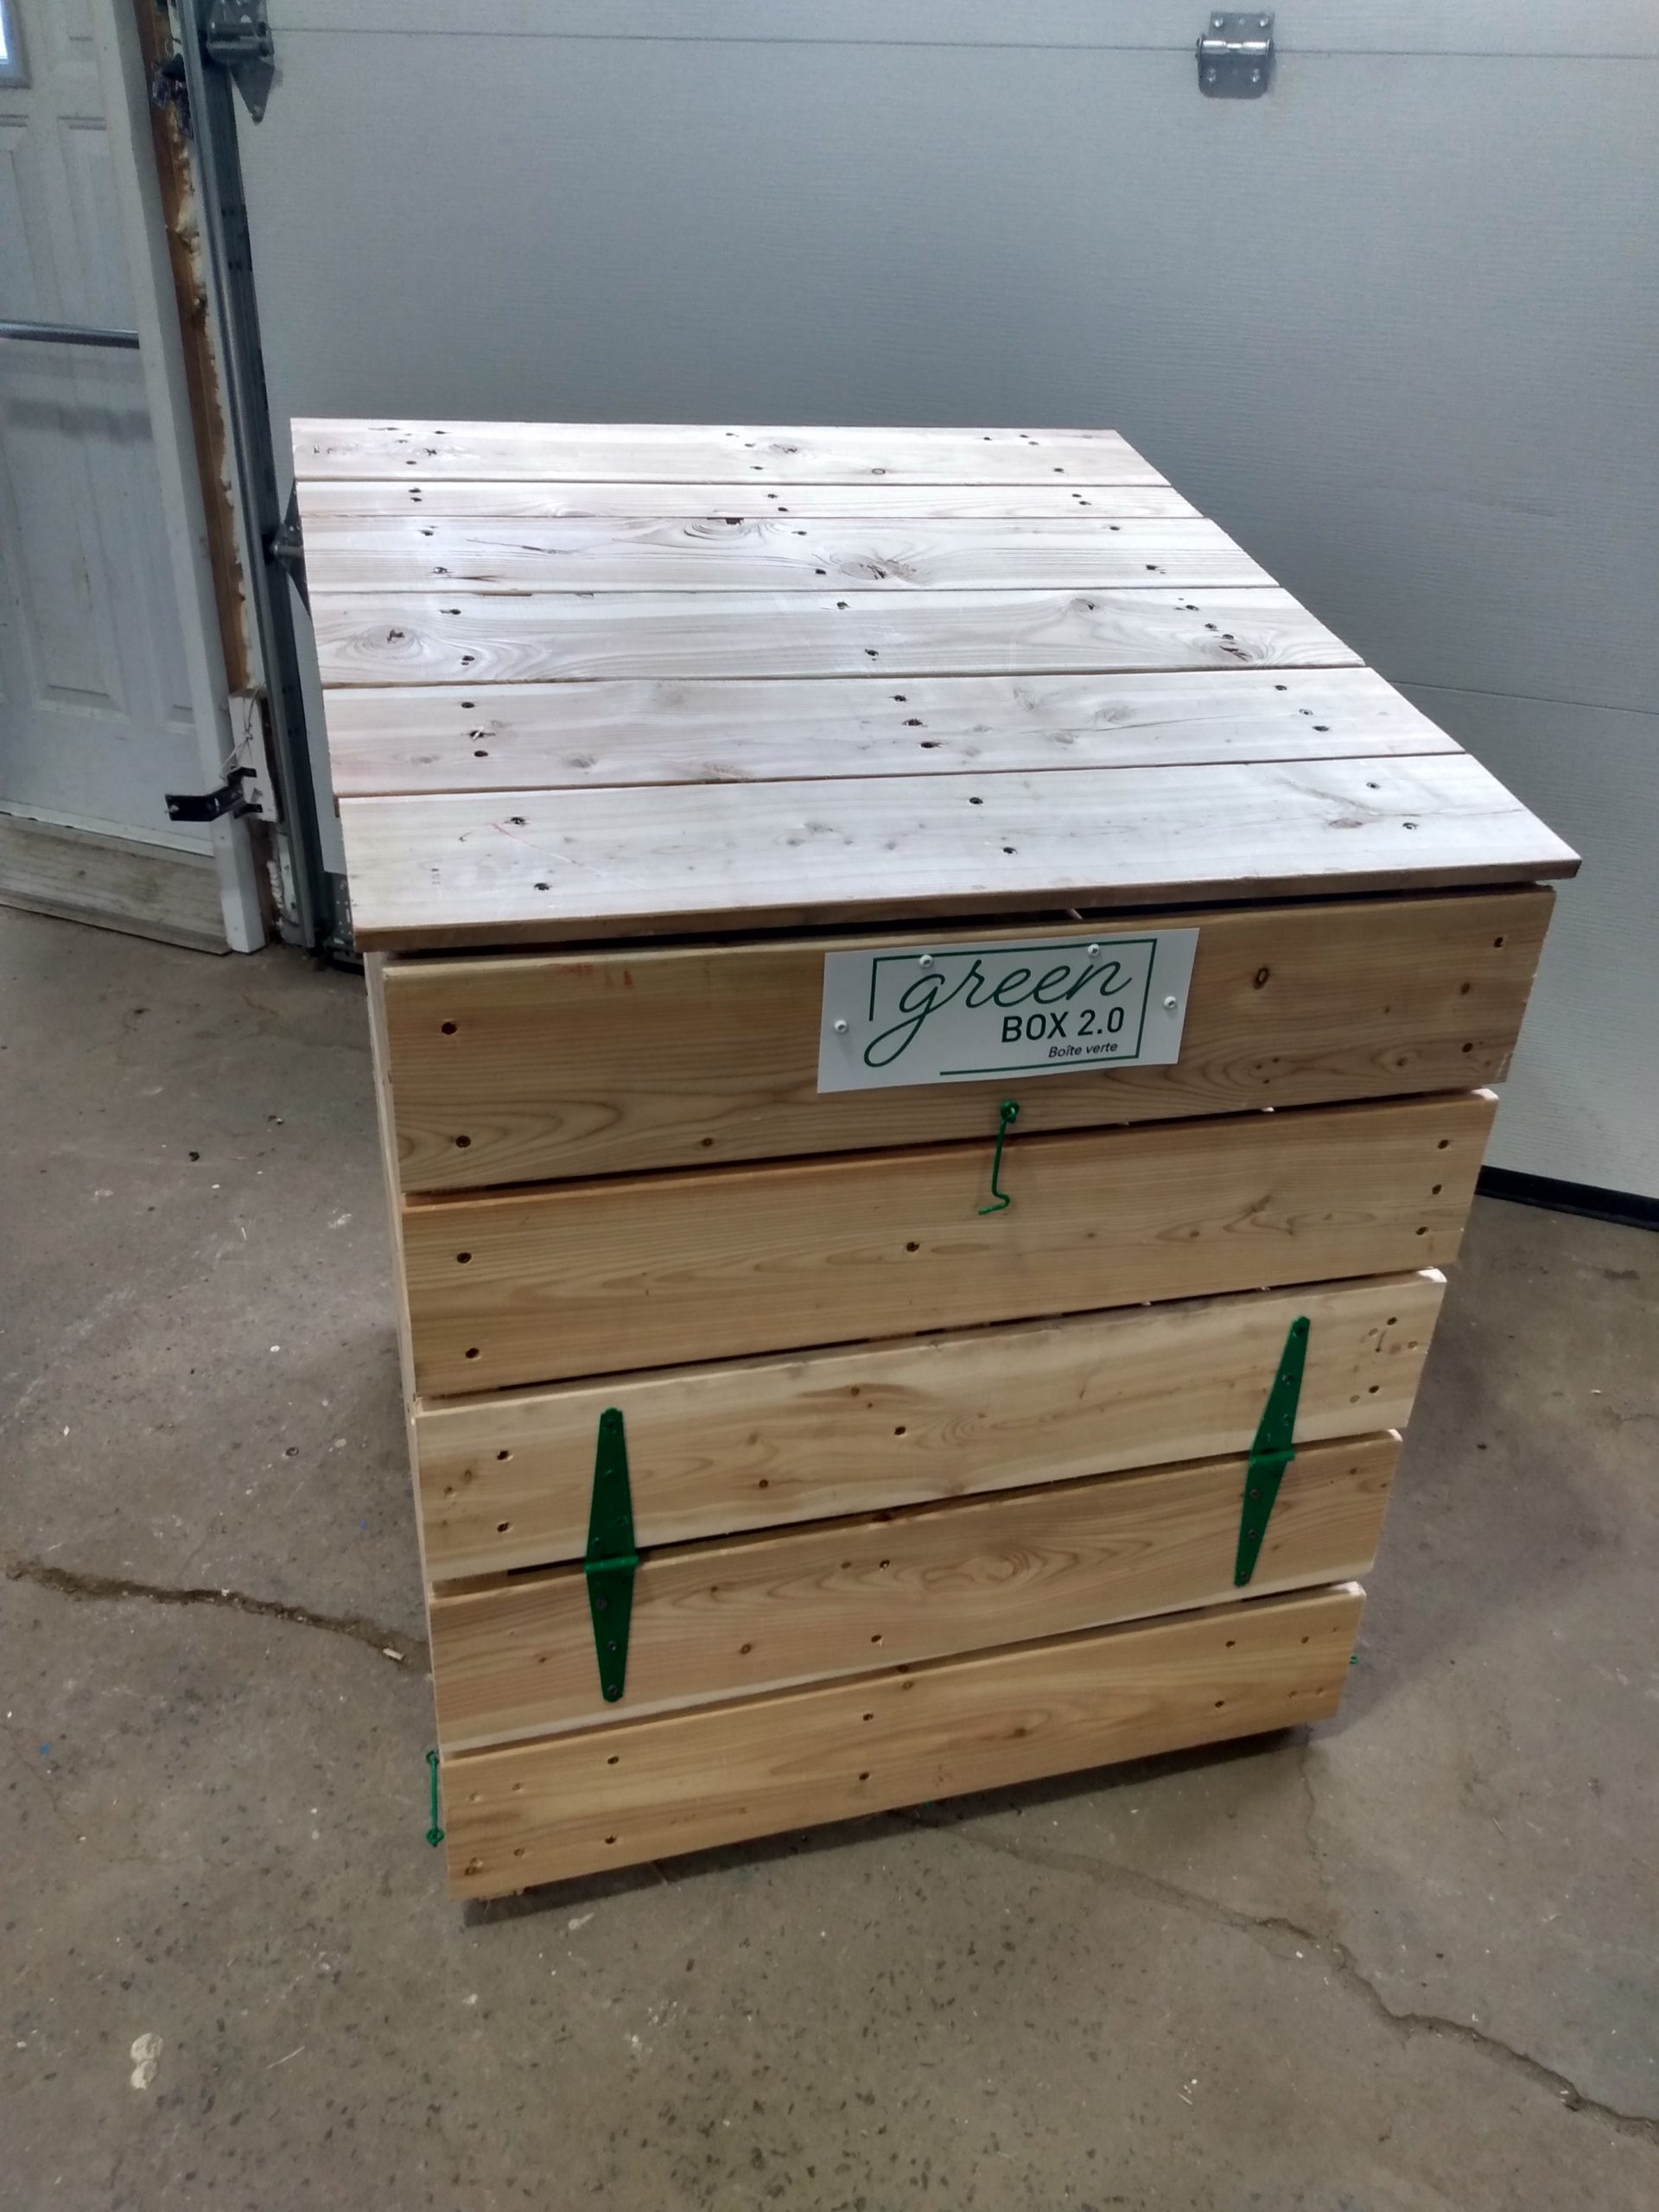 Composteur écologique en bois (Green Box 2.0 Boîte verte)